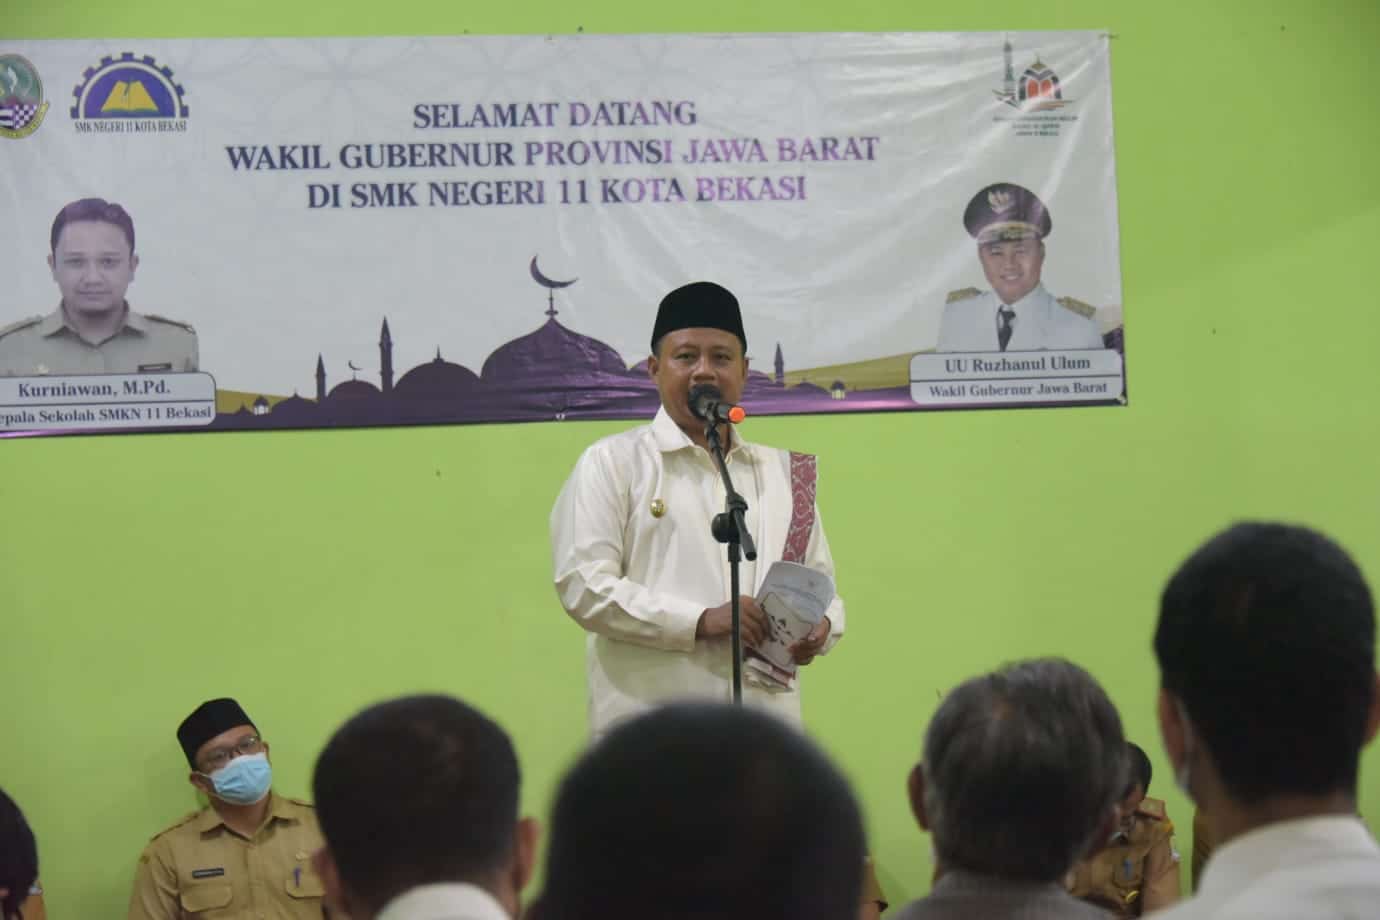 Resmikan Masjid SMK Negeri 11 Kota Bekasi, Uu Ruzhanul: Pendidikan Duniawi dan Ukhrawi Harus Seimbang